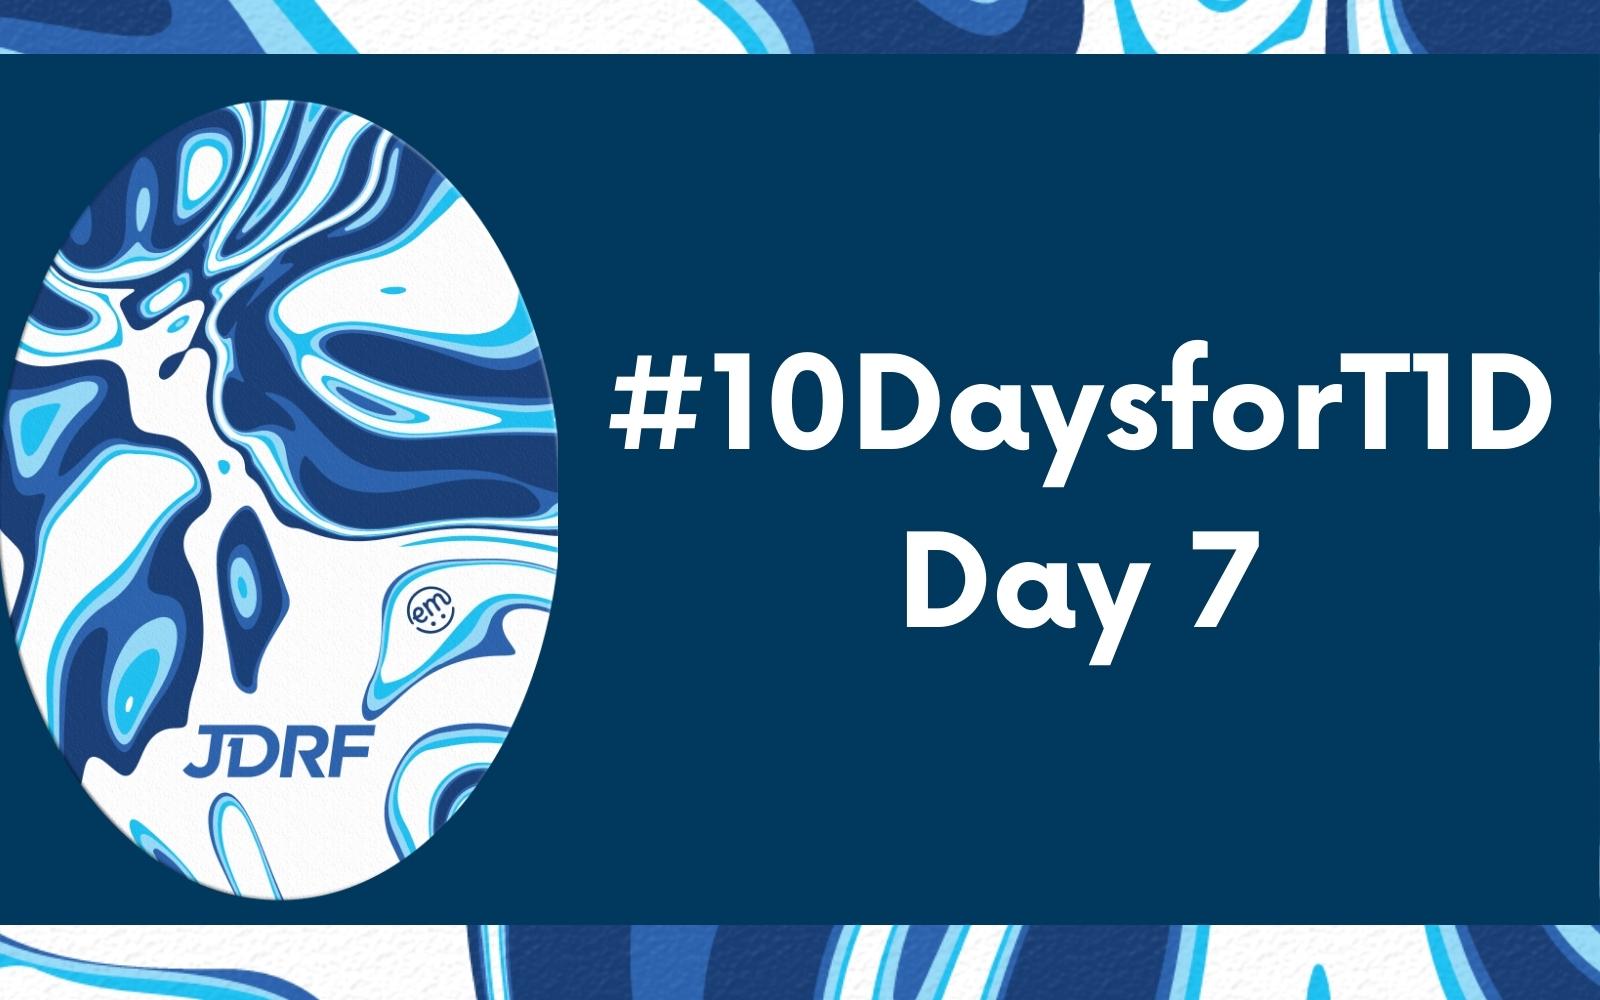 #10DaysforT1D Challenge Day 7